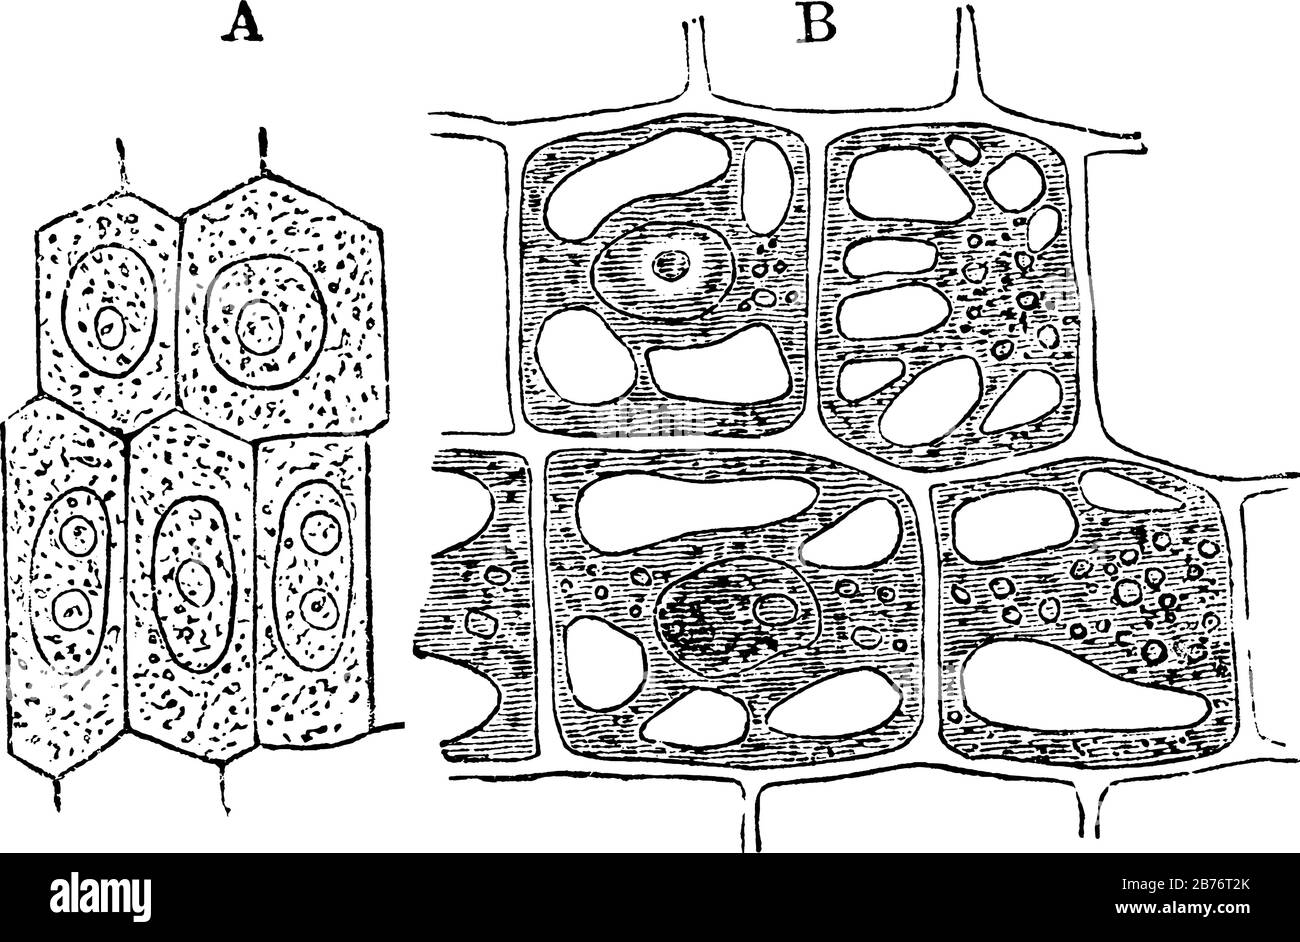 Etiketten: A, junge Gemüsezelle, die Zellhöhle zeigt; B, eine ältere Zelle  derselben Pflanze, die Zellulose-Wand und Vakuolierung von Protoplasma,  Vint zeigt Stock-Vektorgrafik - Alamy